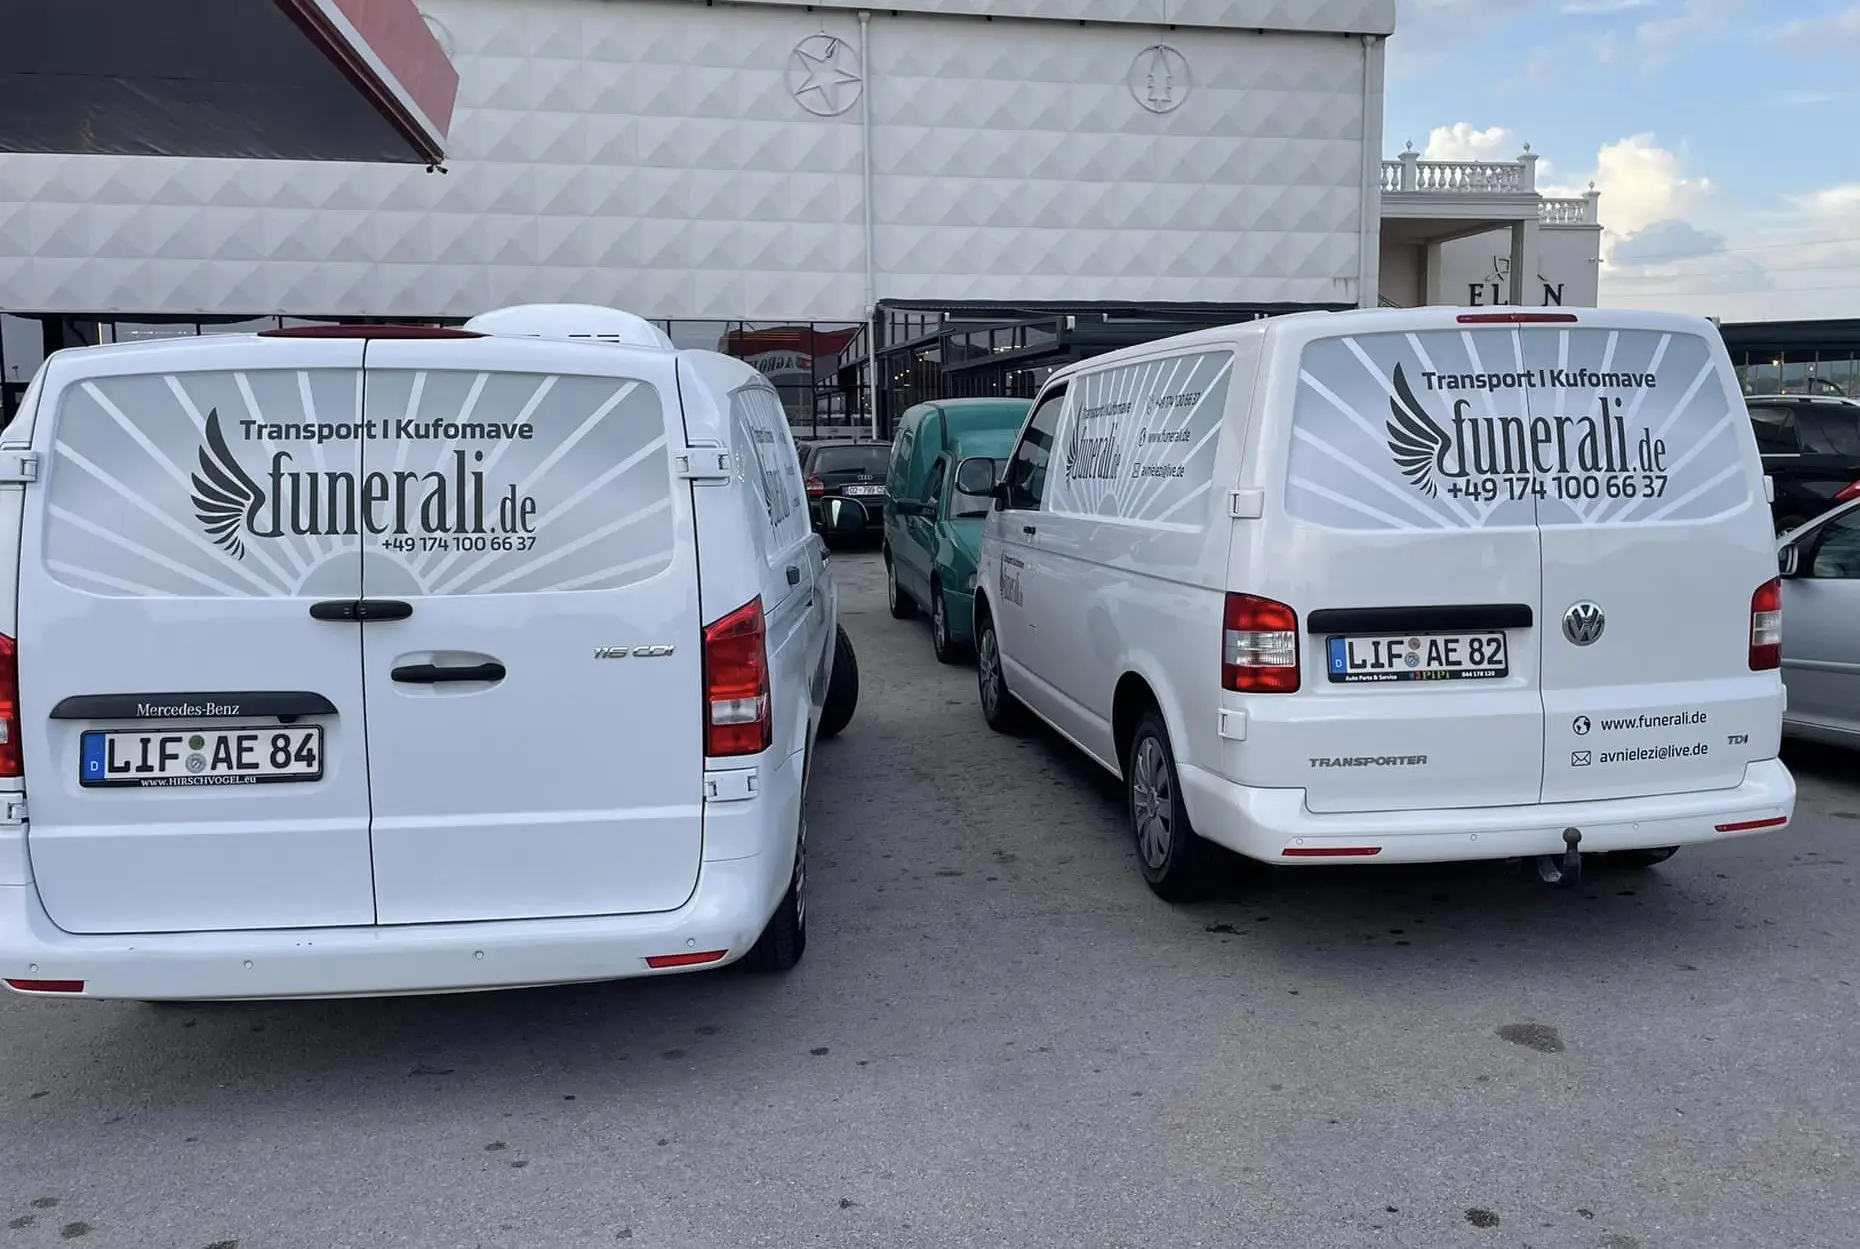 Transport për Kosovë nga Zvicra - Funerali Elezi - Shërbime Funerale